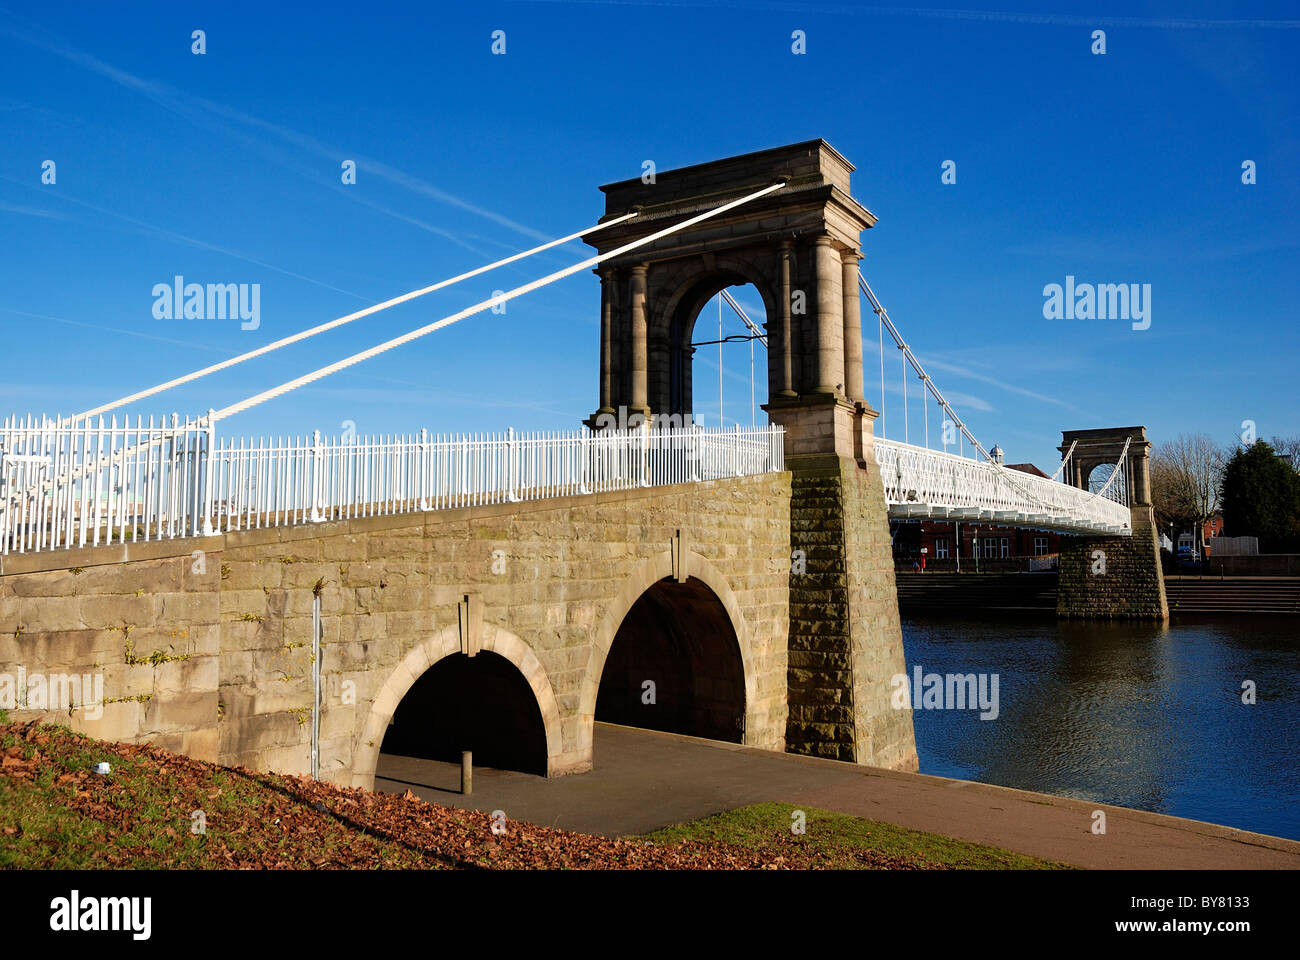 Le pont suspendu de la rivière Trent Nottingham England uk Banque D'Images